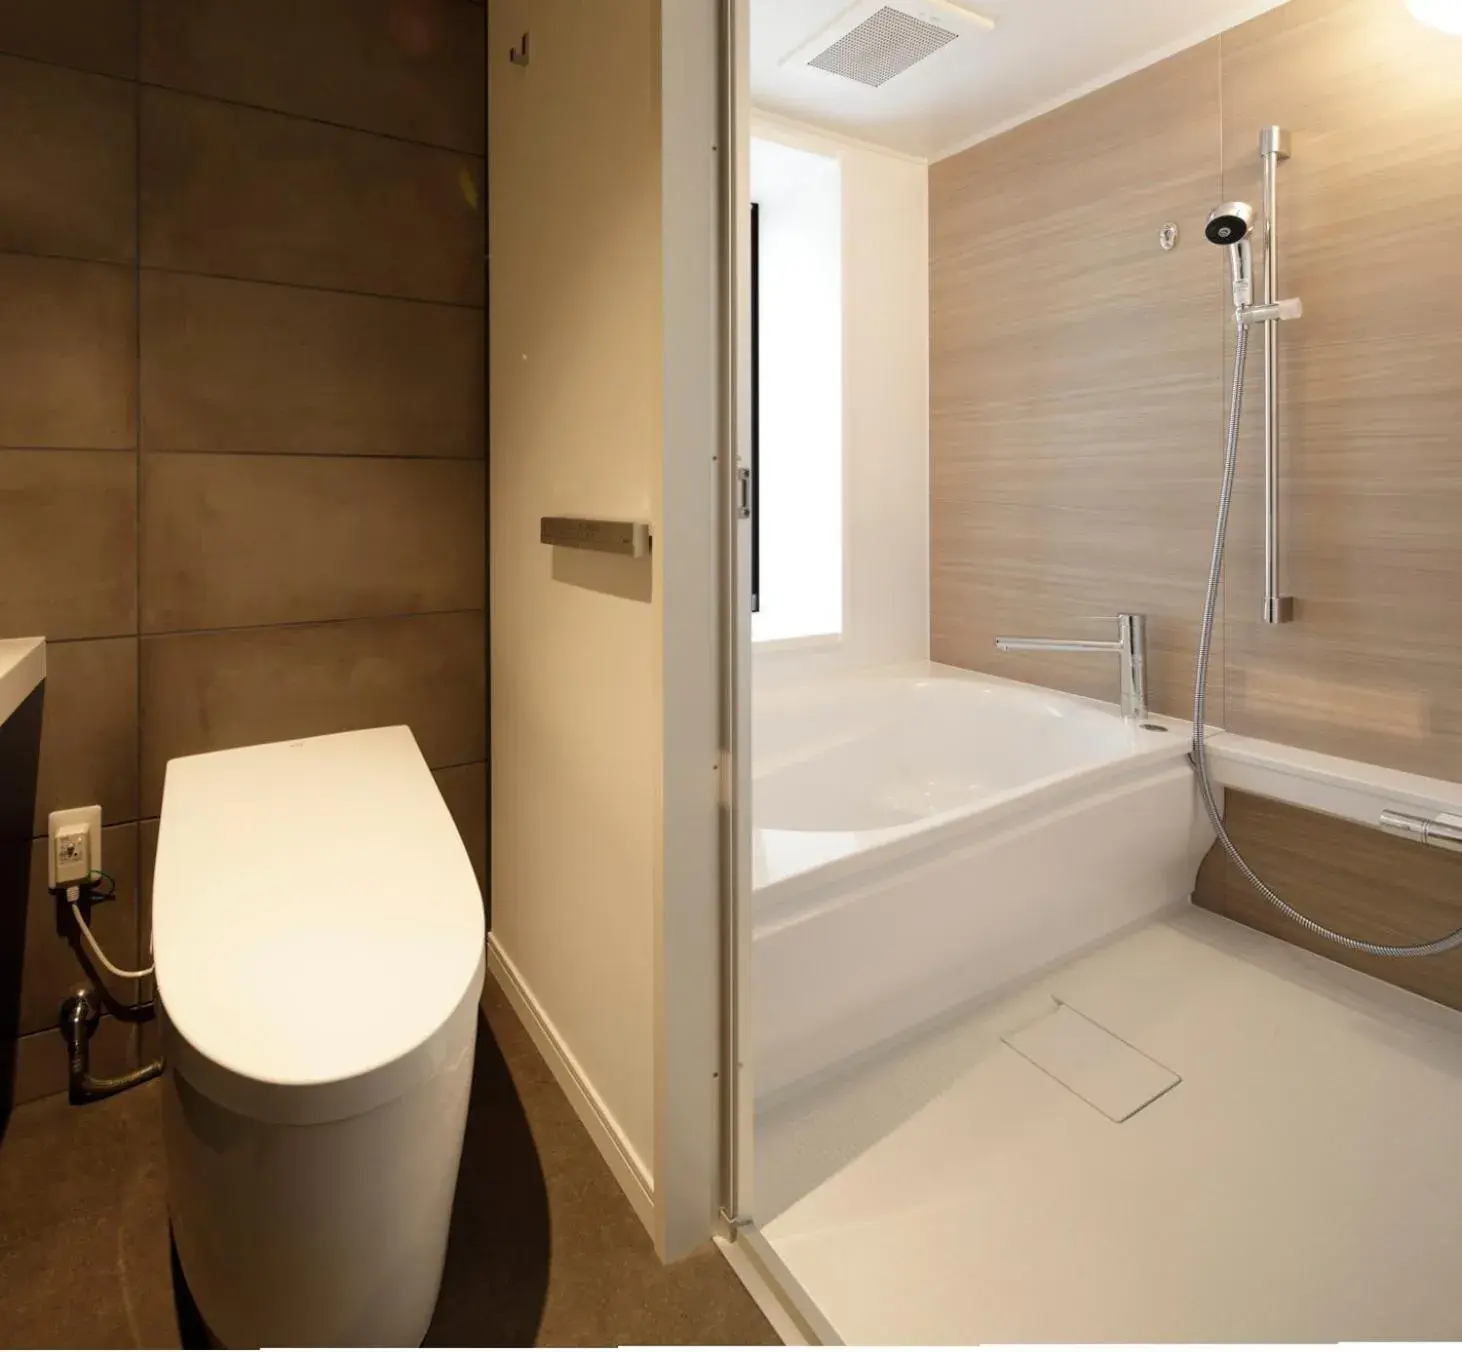 Toilet, Bathroom in Hamacho Hotel Tokyo